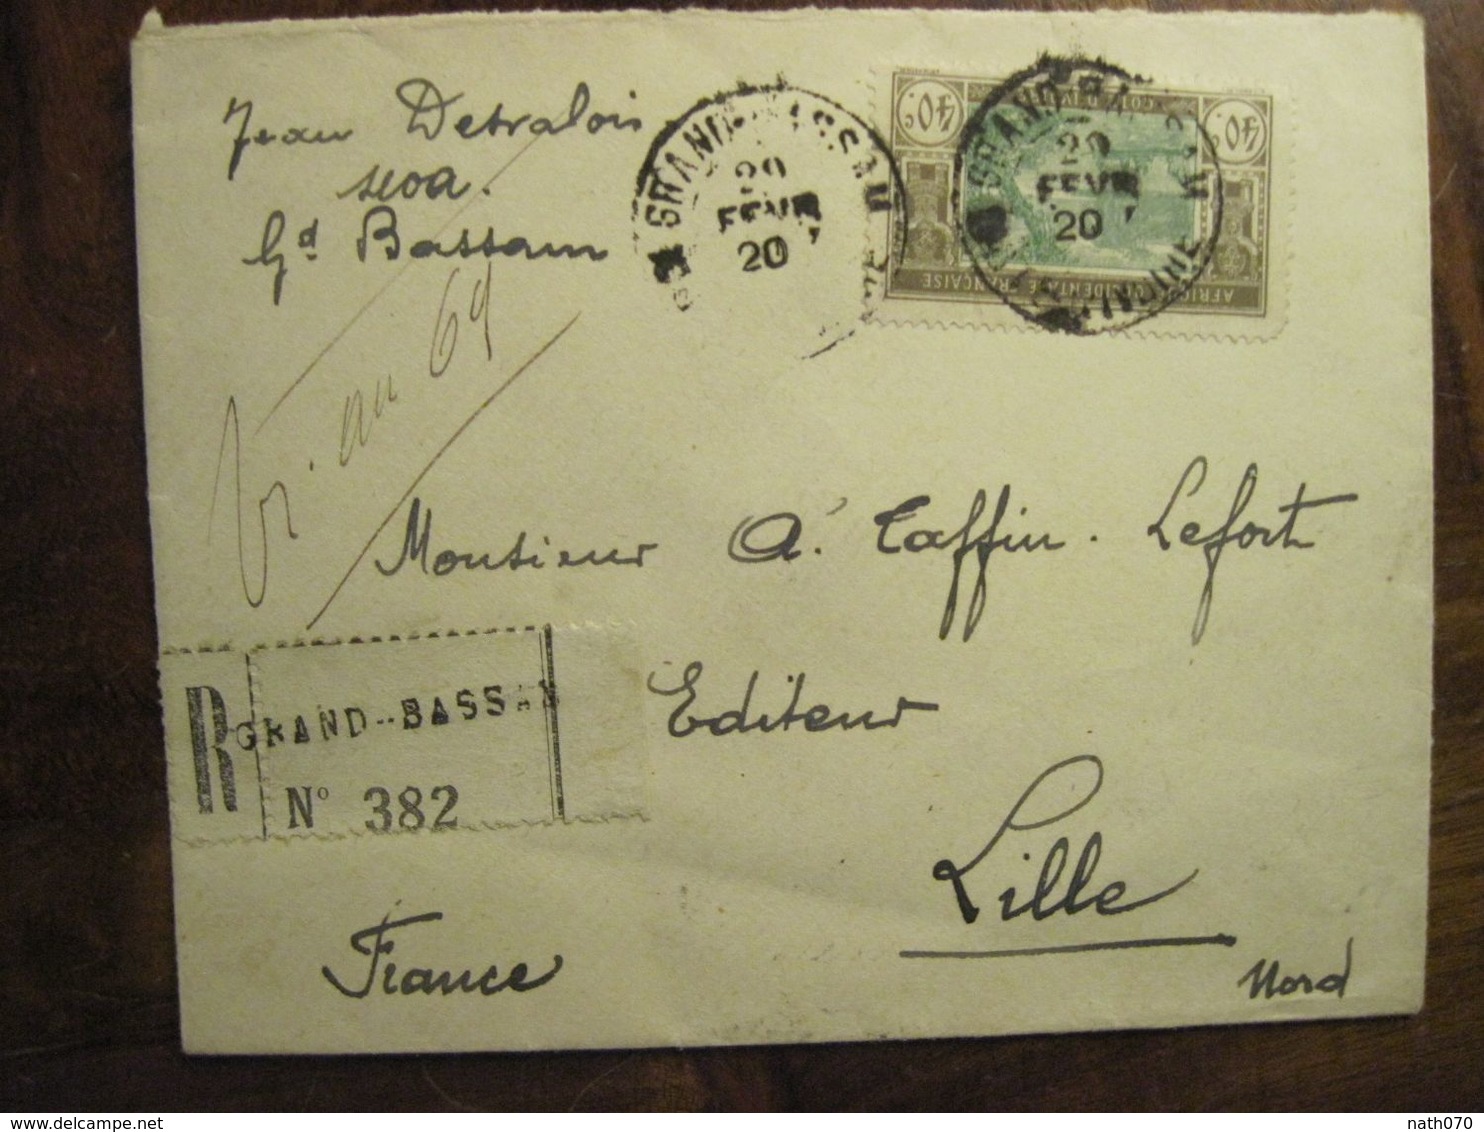 Cote D'Ivoire 1920 France Grand Bassam Lettre Enveloppe Cover Colonie Recommandé Reco AOF Taffin Lefort - Cartas & Documentos